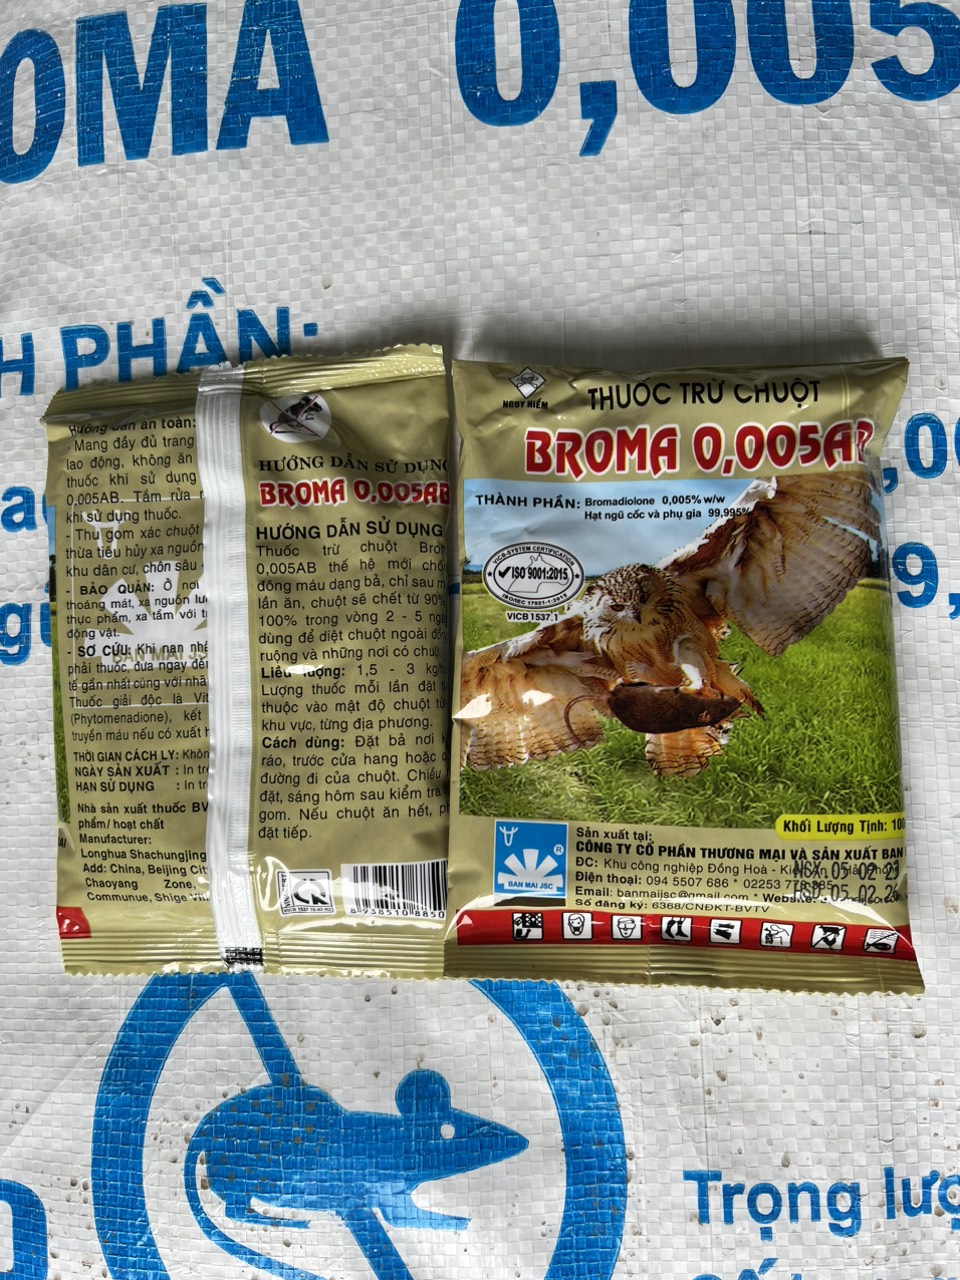 5 gói x 100g thuốc diệt chuột sinh học broma (hình đại bàng)